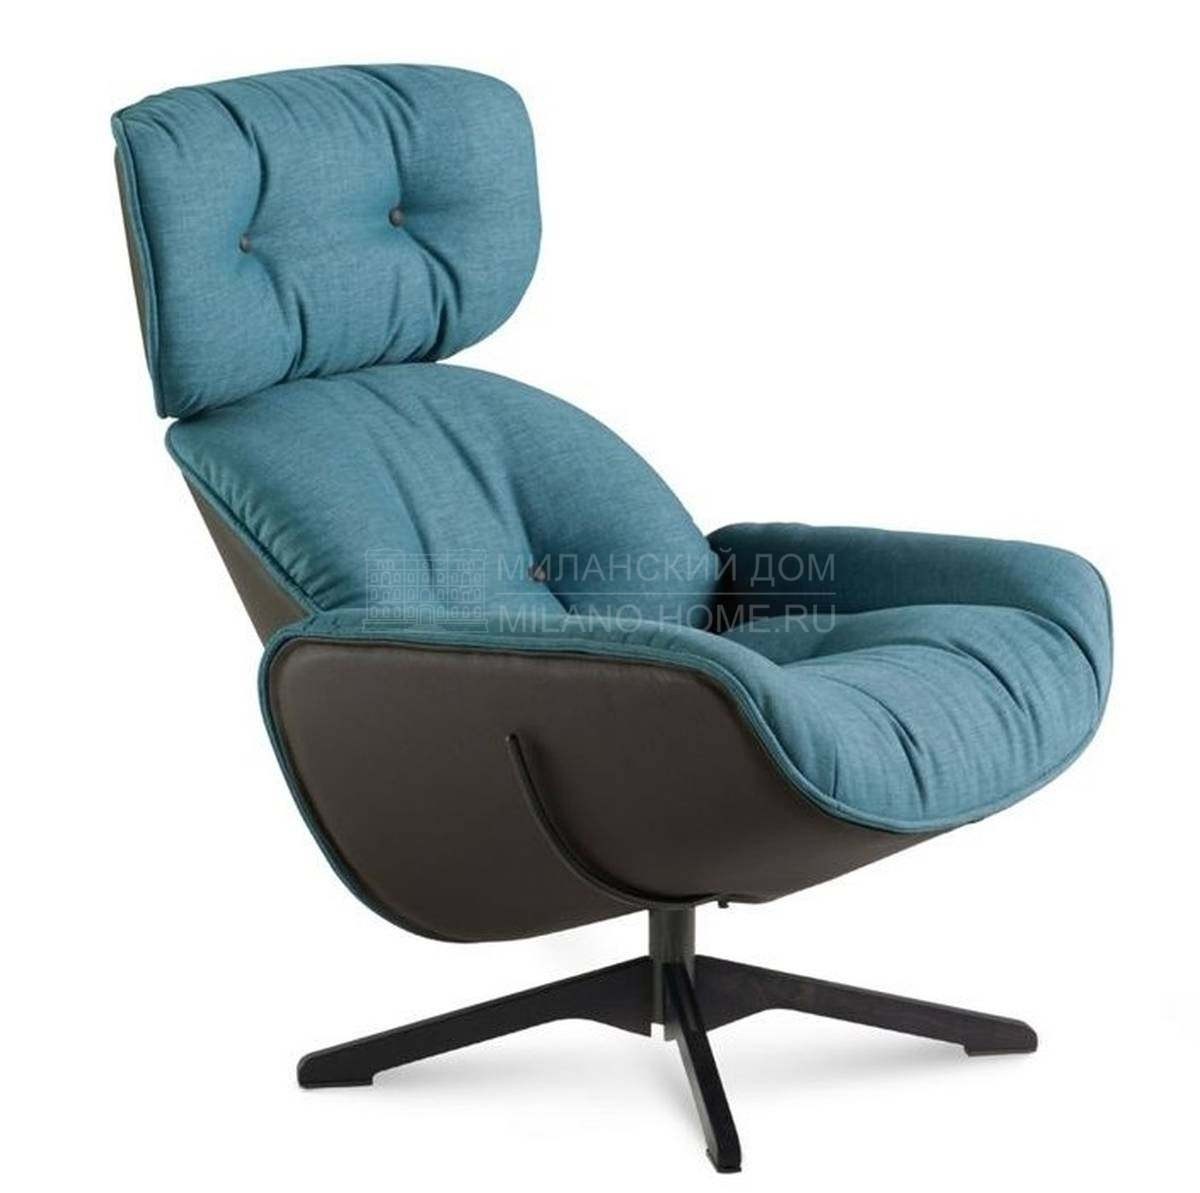 Лаунж кресло Quiet life 2 relax armchair из Франции фабрики ROCHE BOBOIS